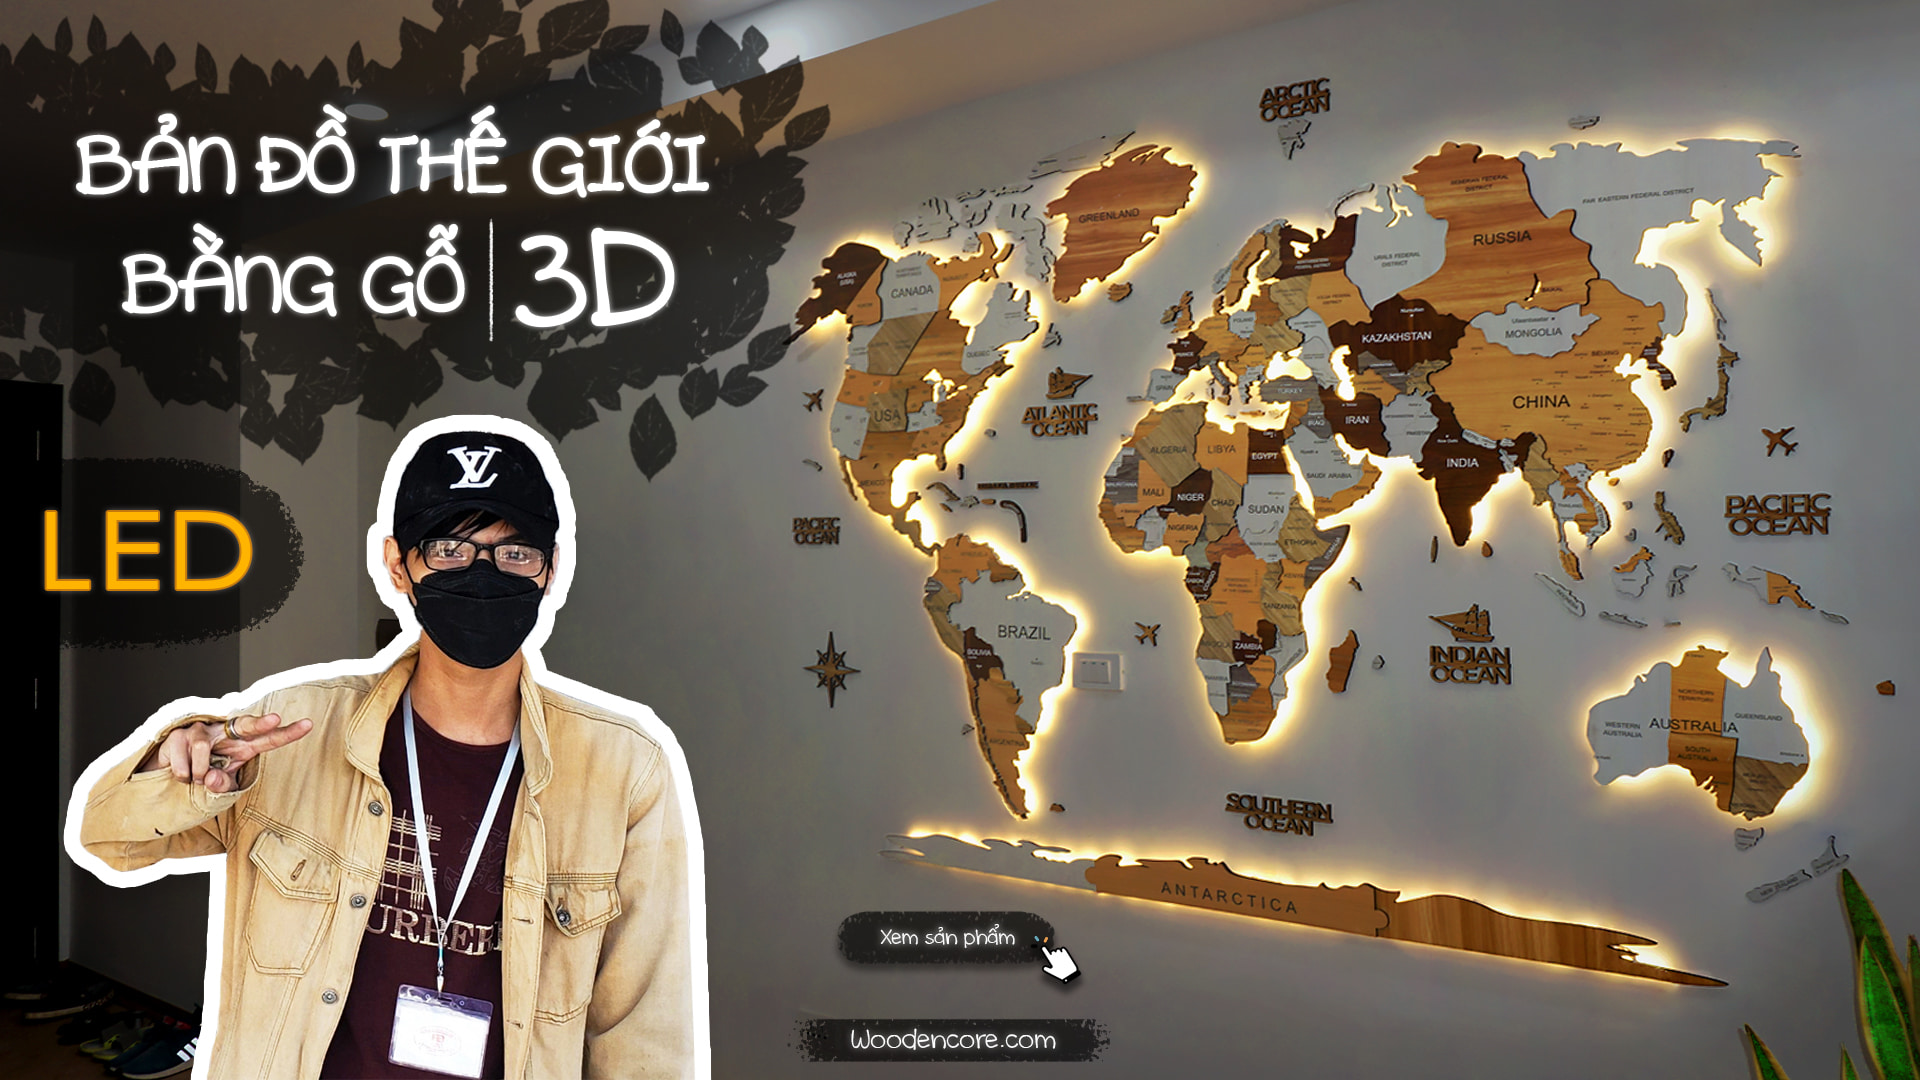 Bản đồ gỗ 3D Việt Nam và Thế Giới: Khám phá thế giới của chúng ta thông qua bản đồ gỗ 3D với chi tiết tuyệt vời. Với sự kết hợp giữa nghệ thuật và công nghệ, hình ảnh không chỉ đẹp mắt mà còn mang lại sự trải nghiệm hấp dẫn cho người xem.